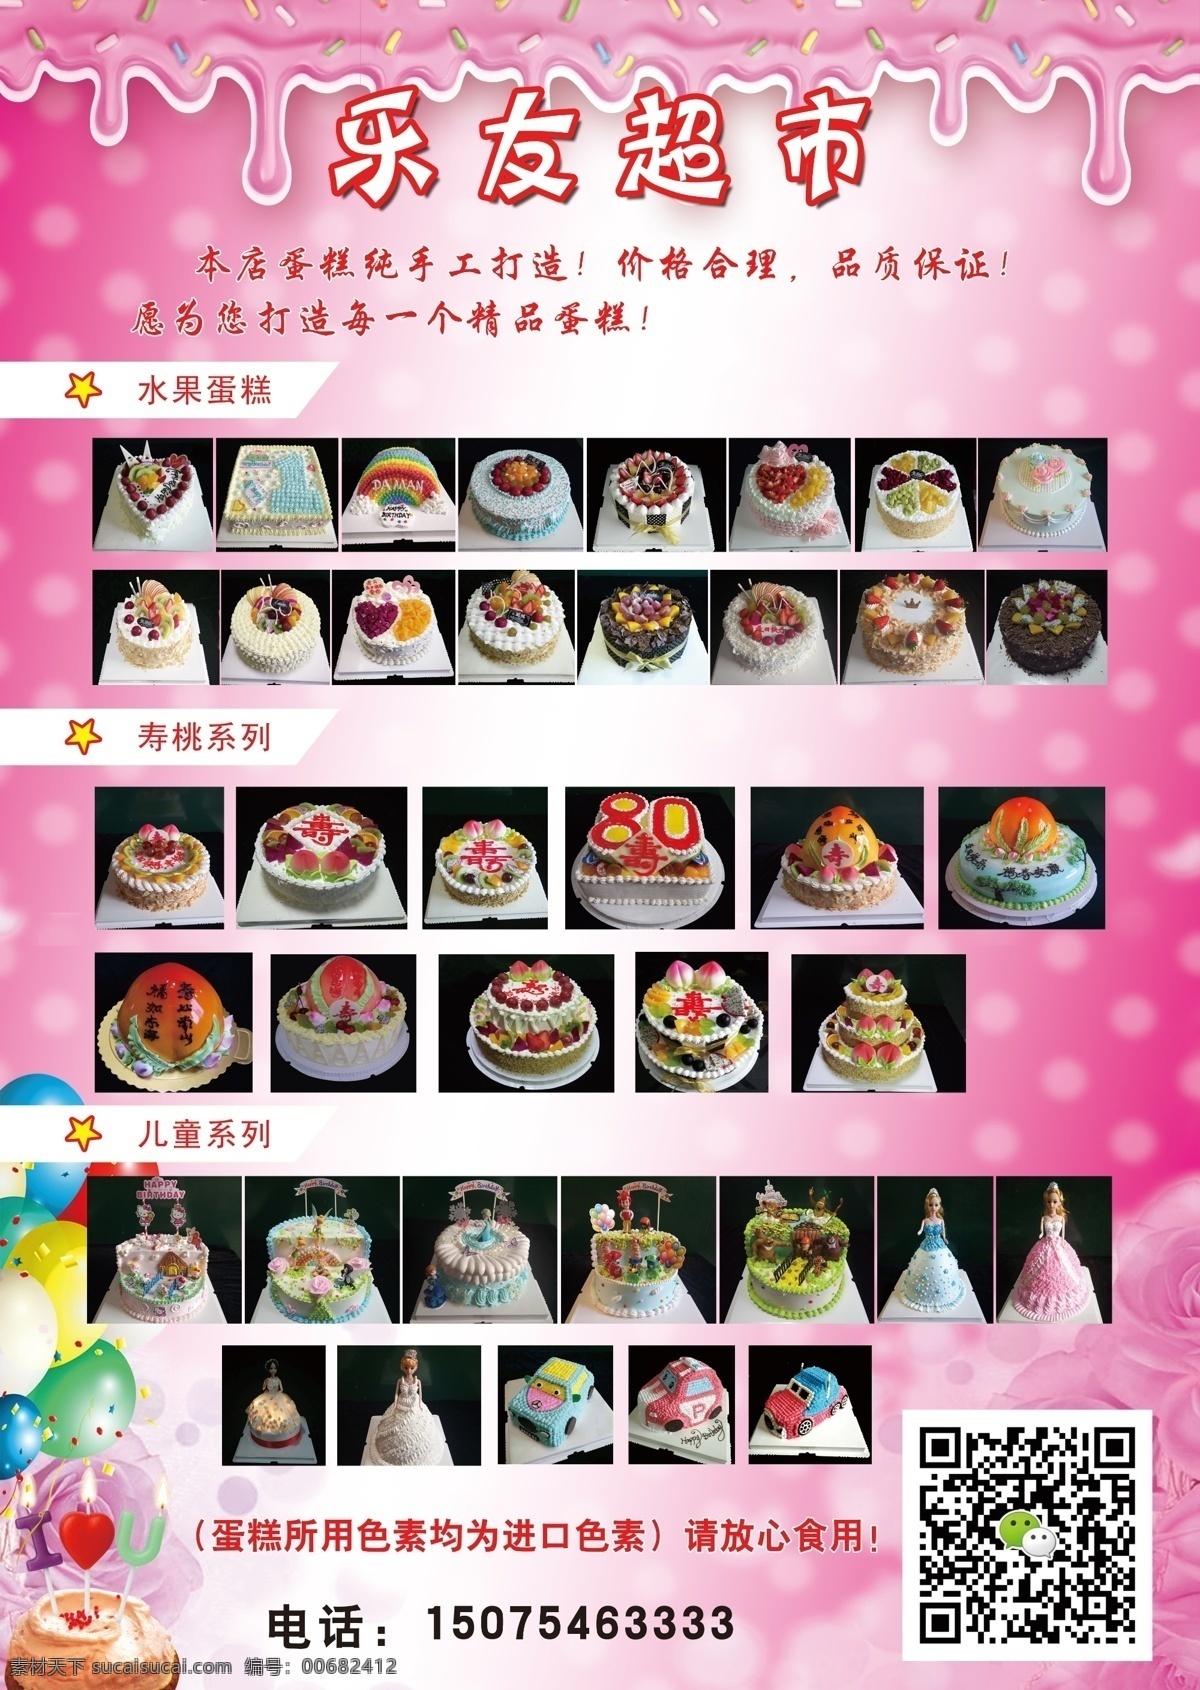 蛋糕 系列 促销 展板 生日 水果蛋糕 超市 手工蛋糕 品质蛋糕 寿桃系列 儿童系列